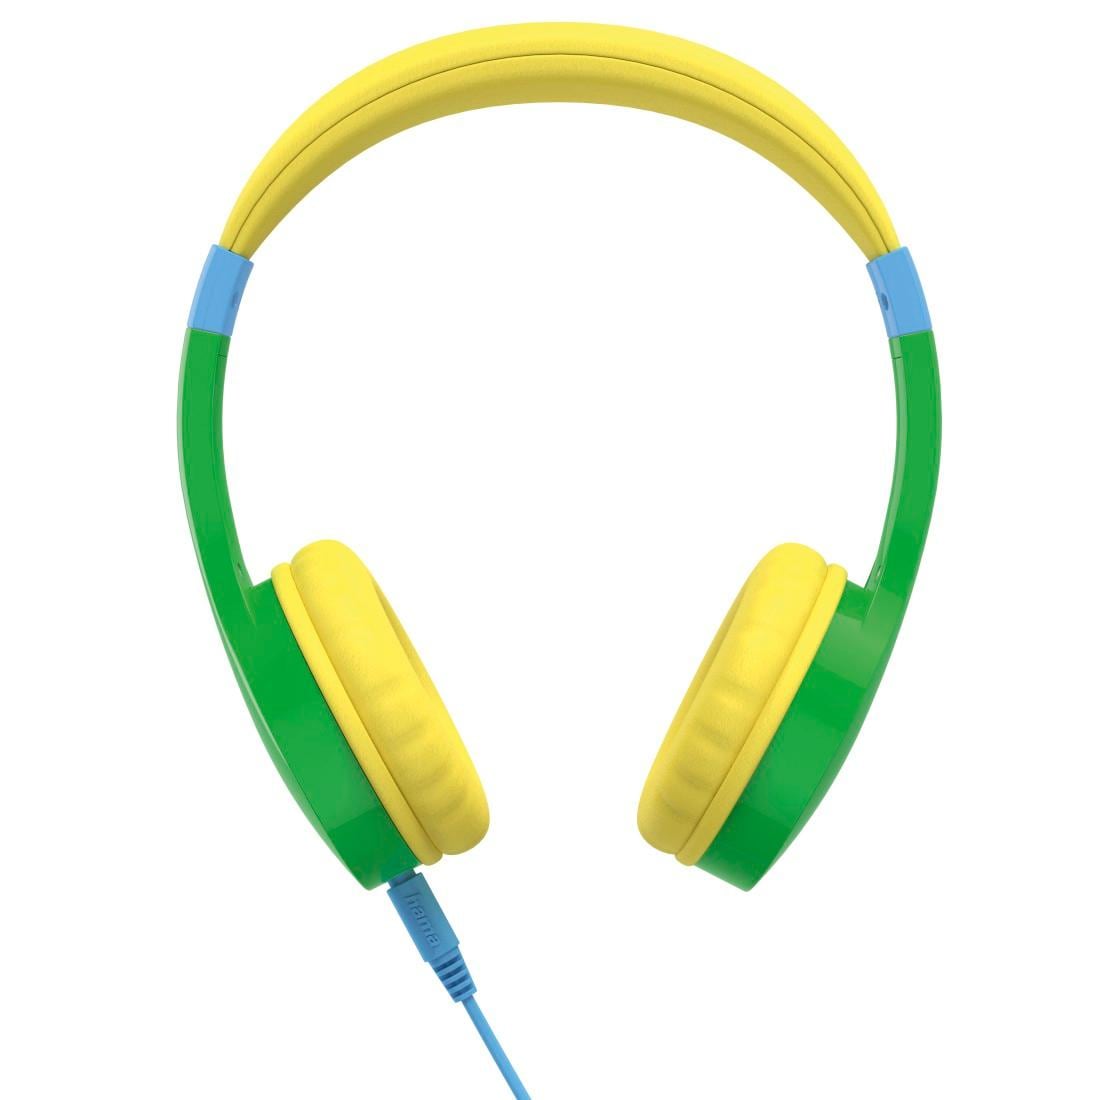 Hama Kinder-Kopfhörer »Kinderkopfhörer mit Kabel (85 dB Lautstärkebegrenzung, On-Ear)«, Sprachsteuerung, Größenverstellbar, Integriertes Mikrofon, Siri und Google Assistant